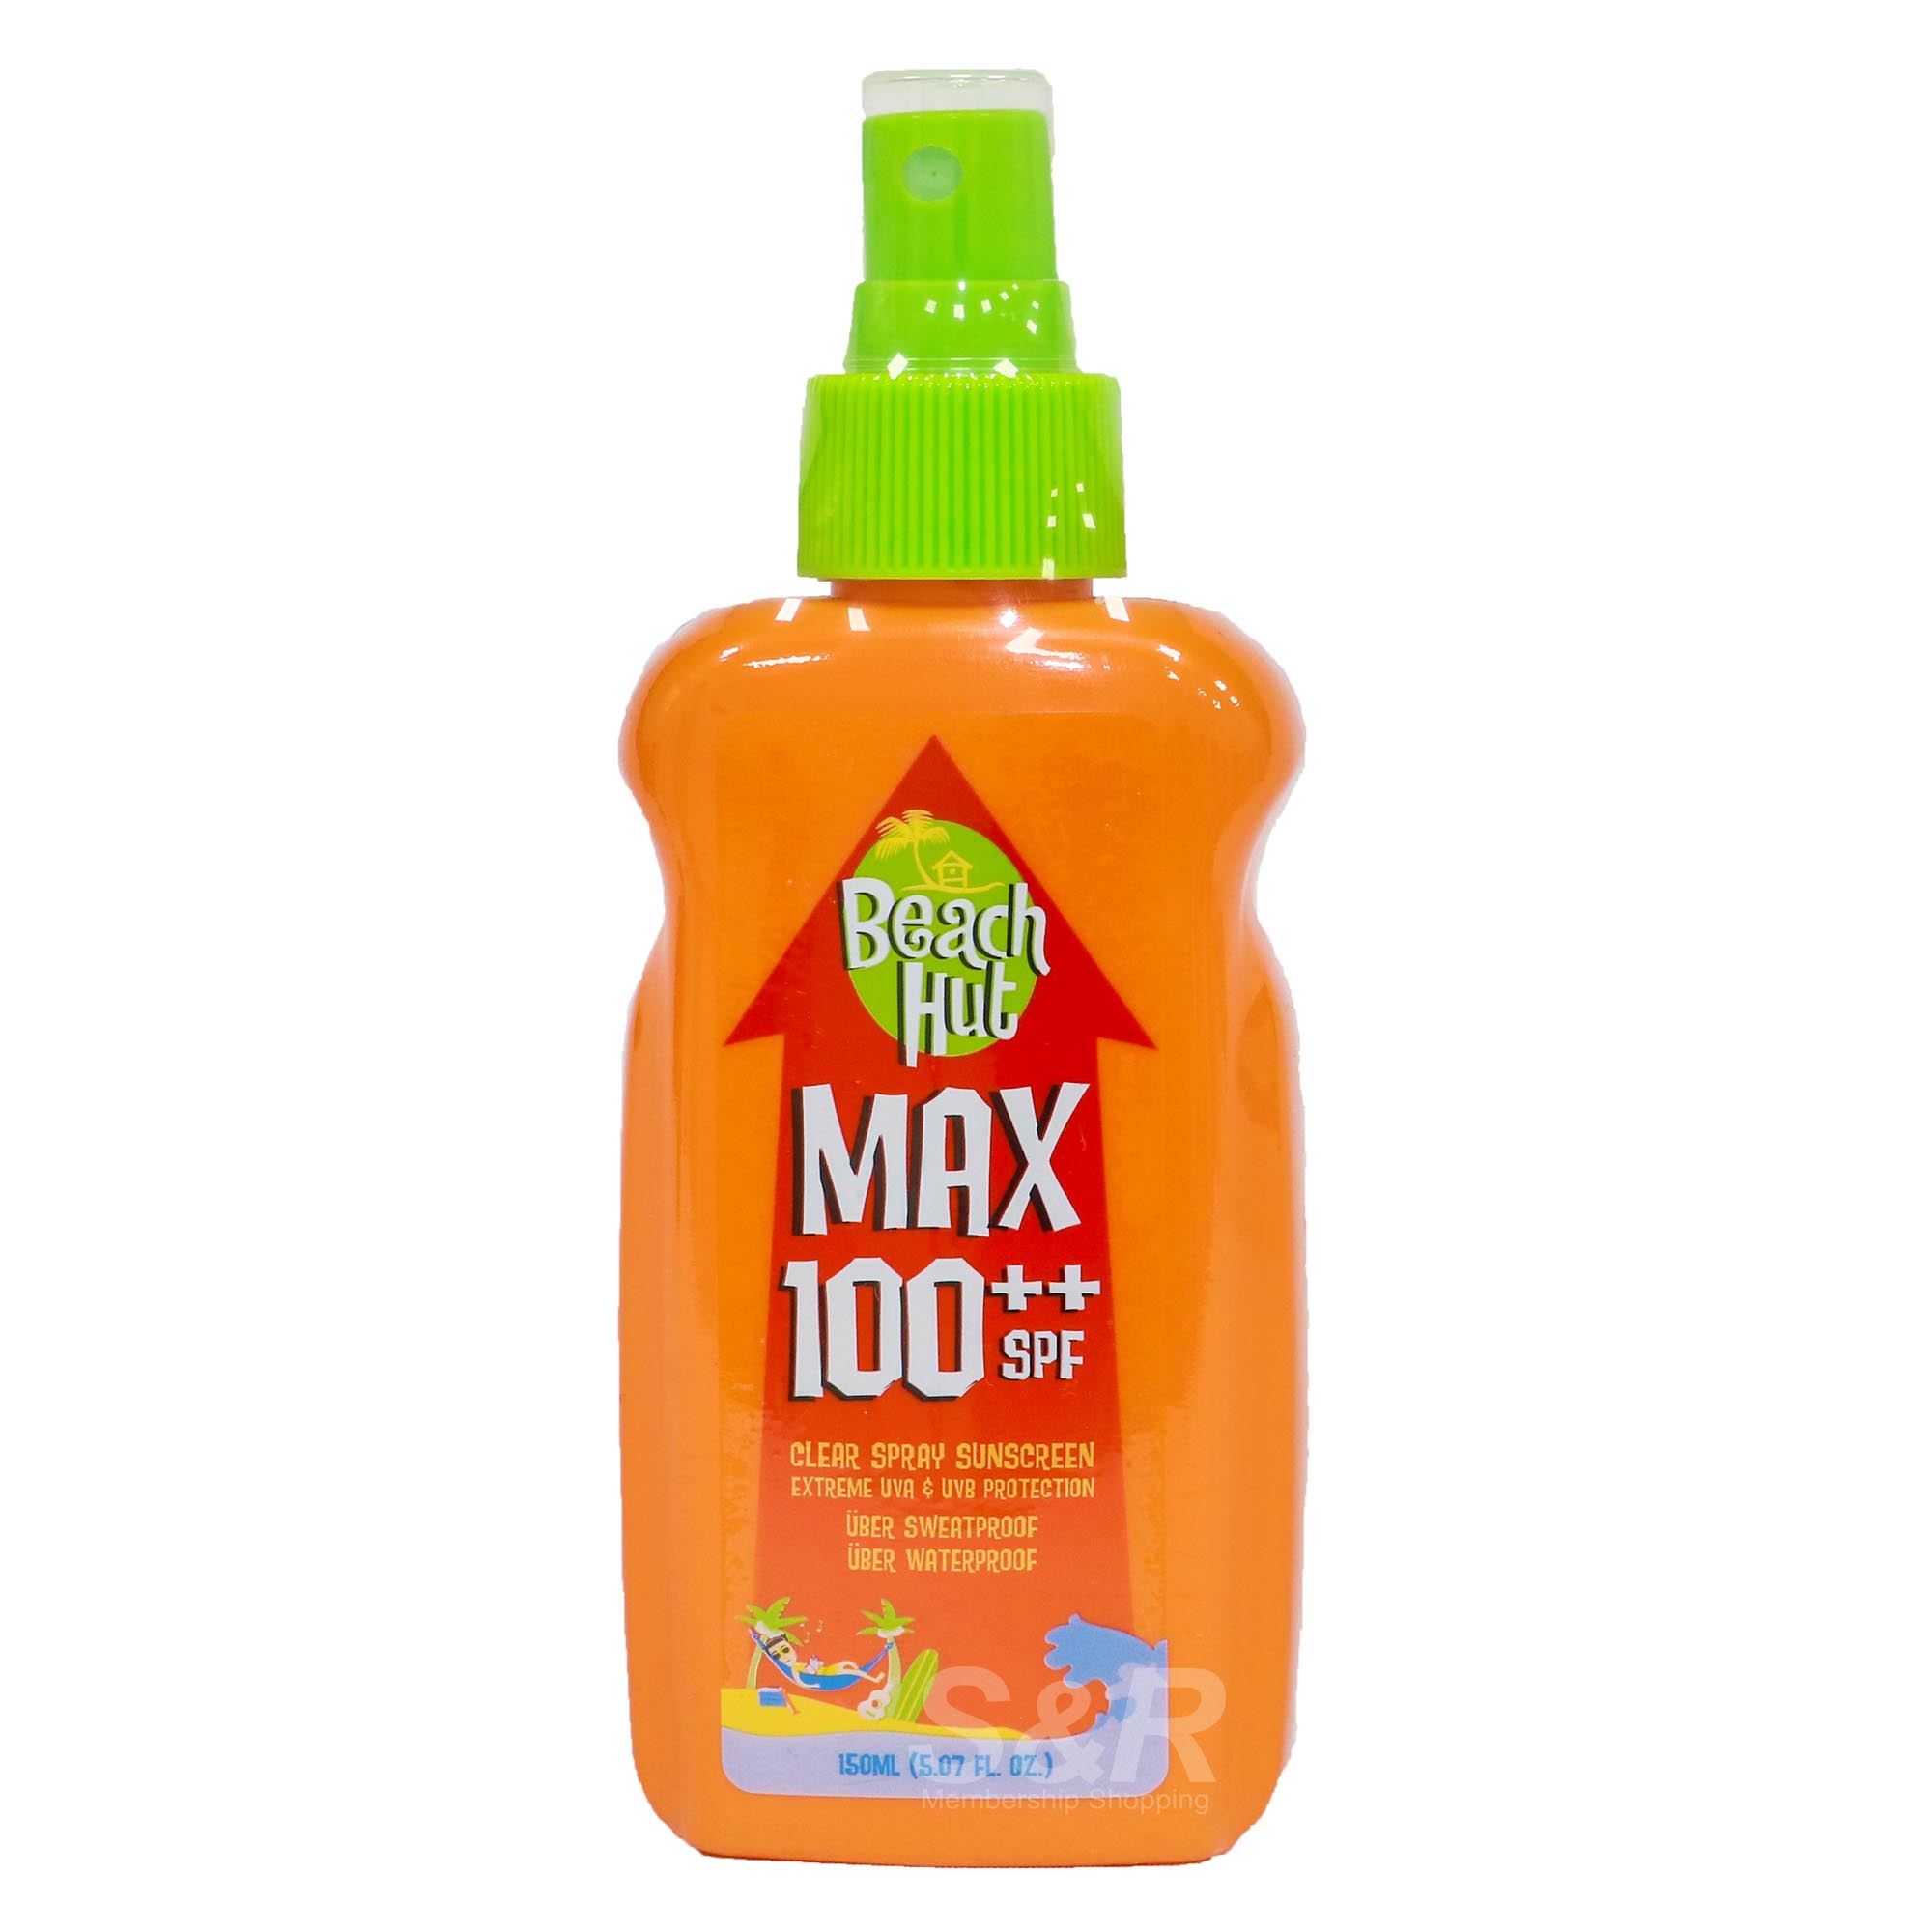 Beach Hut Max 100++ SPF Clear Spray Sunscreen 150mL